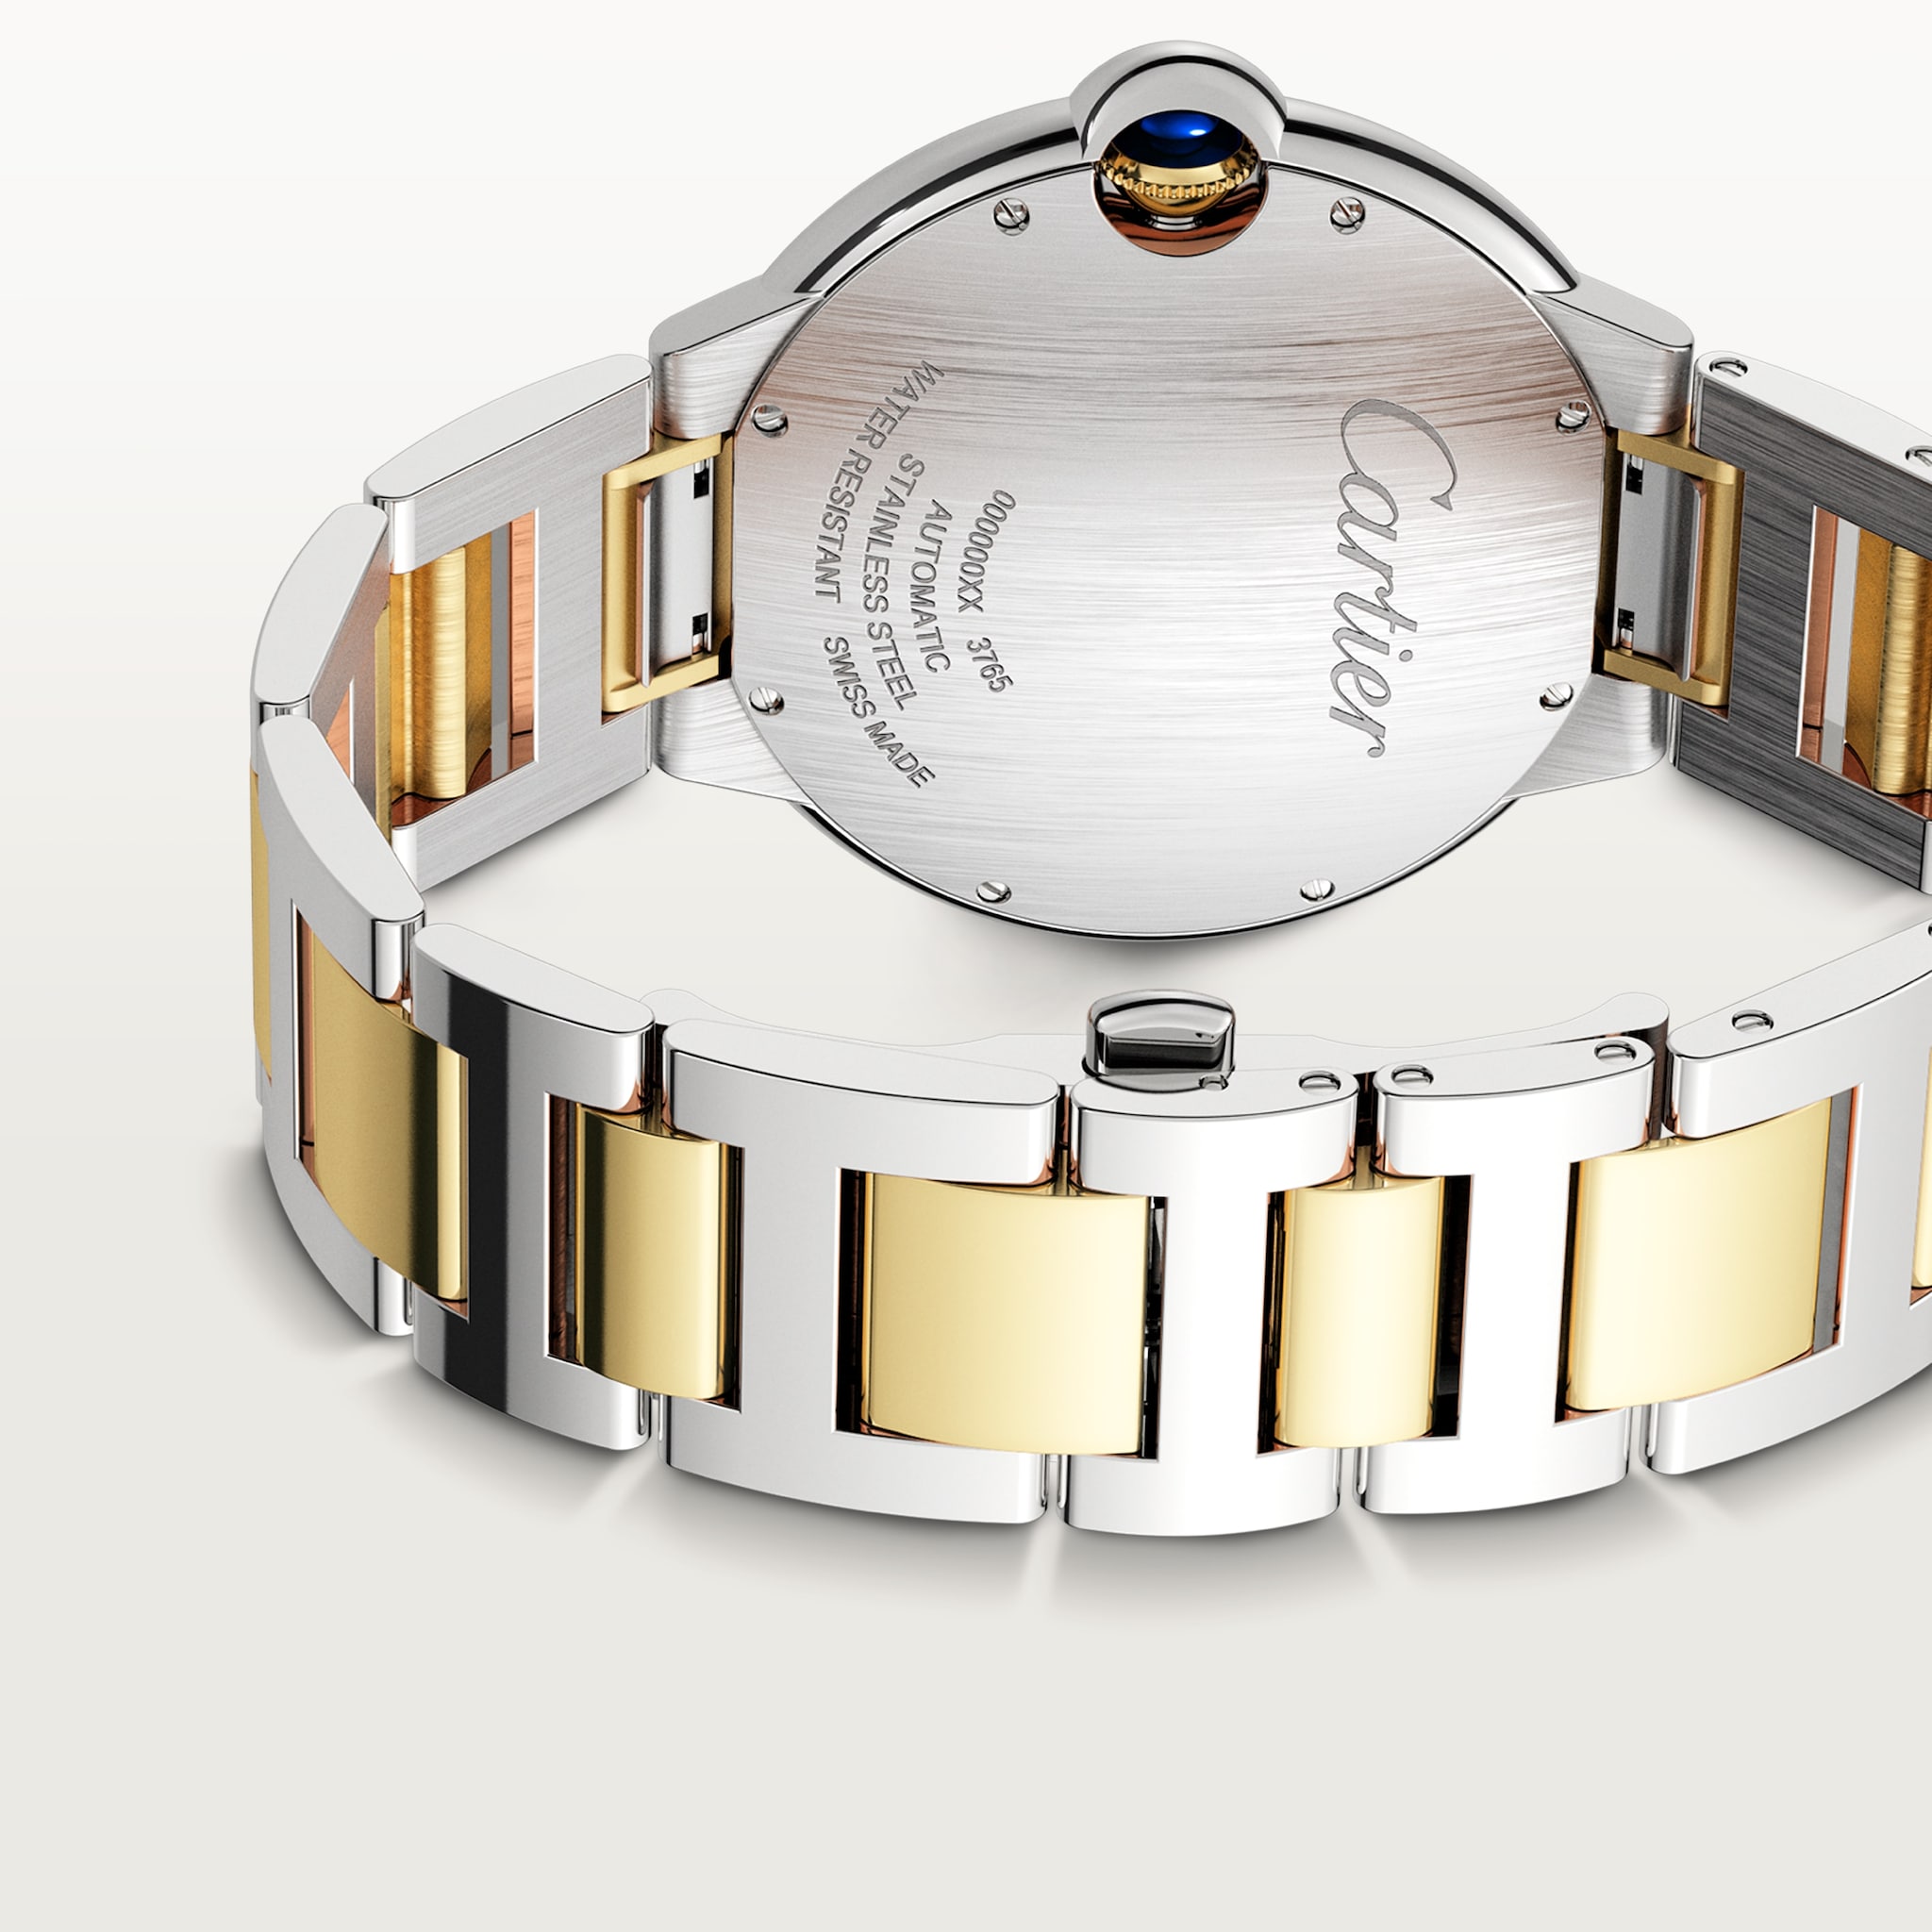 Ballon Bleu de Cartier42 mm, mechanisches Uhrwerk mit Automatikaufzug, Gelbgold, Edelstahl